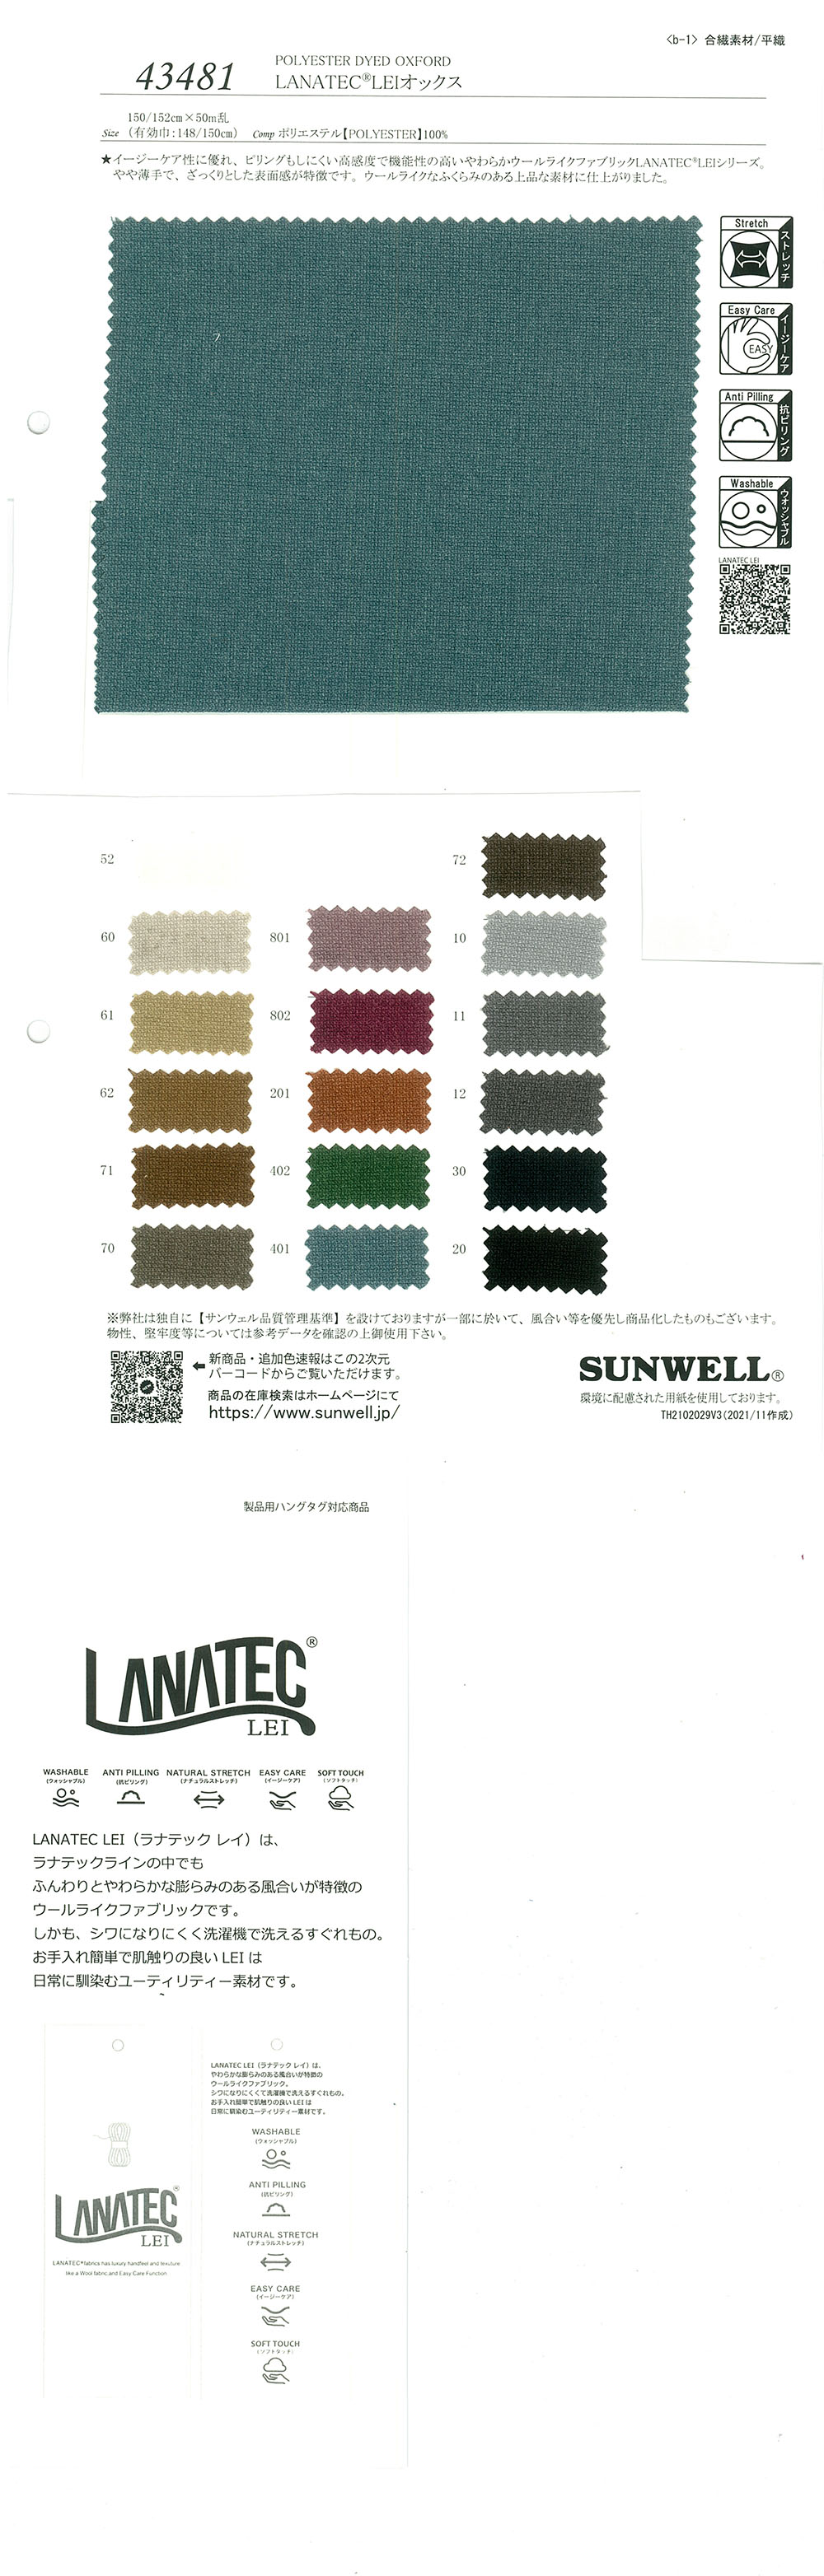 43481 LANATEC(R) LEI Oxford[Textile / Fabric] SUNWELL